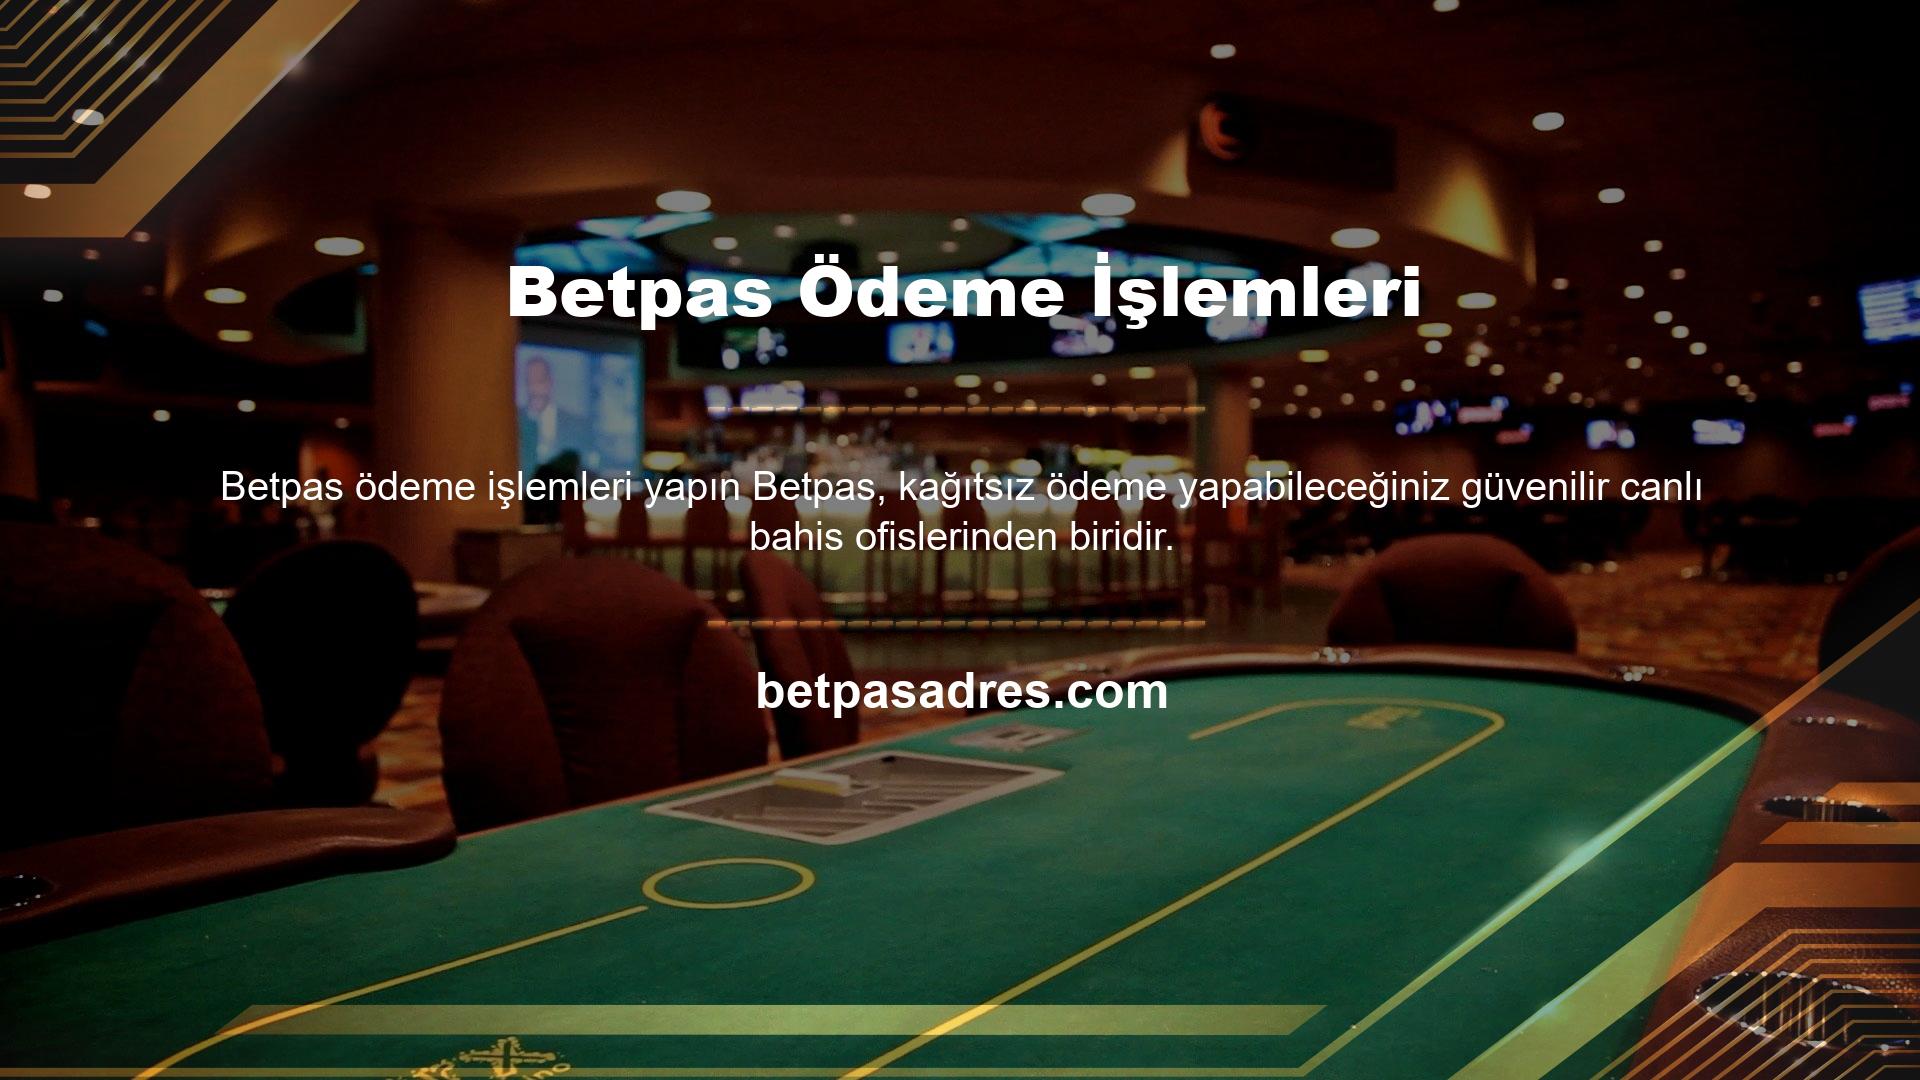 Bazı casino siteleri, üyelerin kimlik kartlarının veya faturaların kopyalarını sağlamasını ister